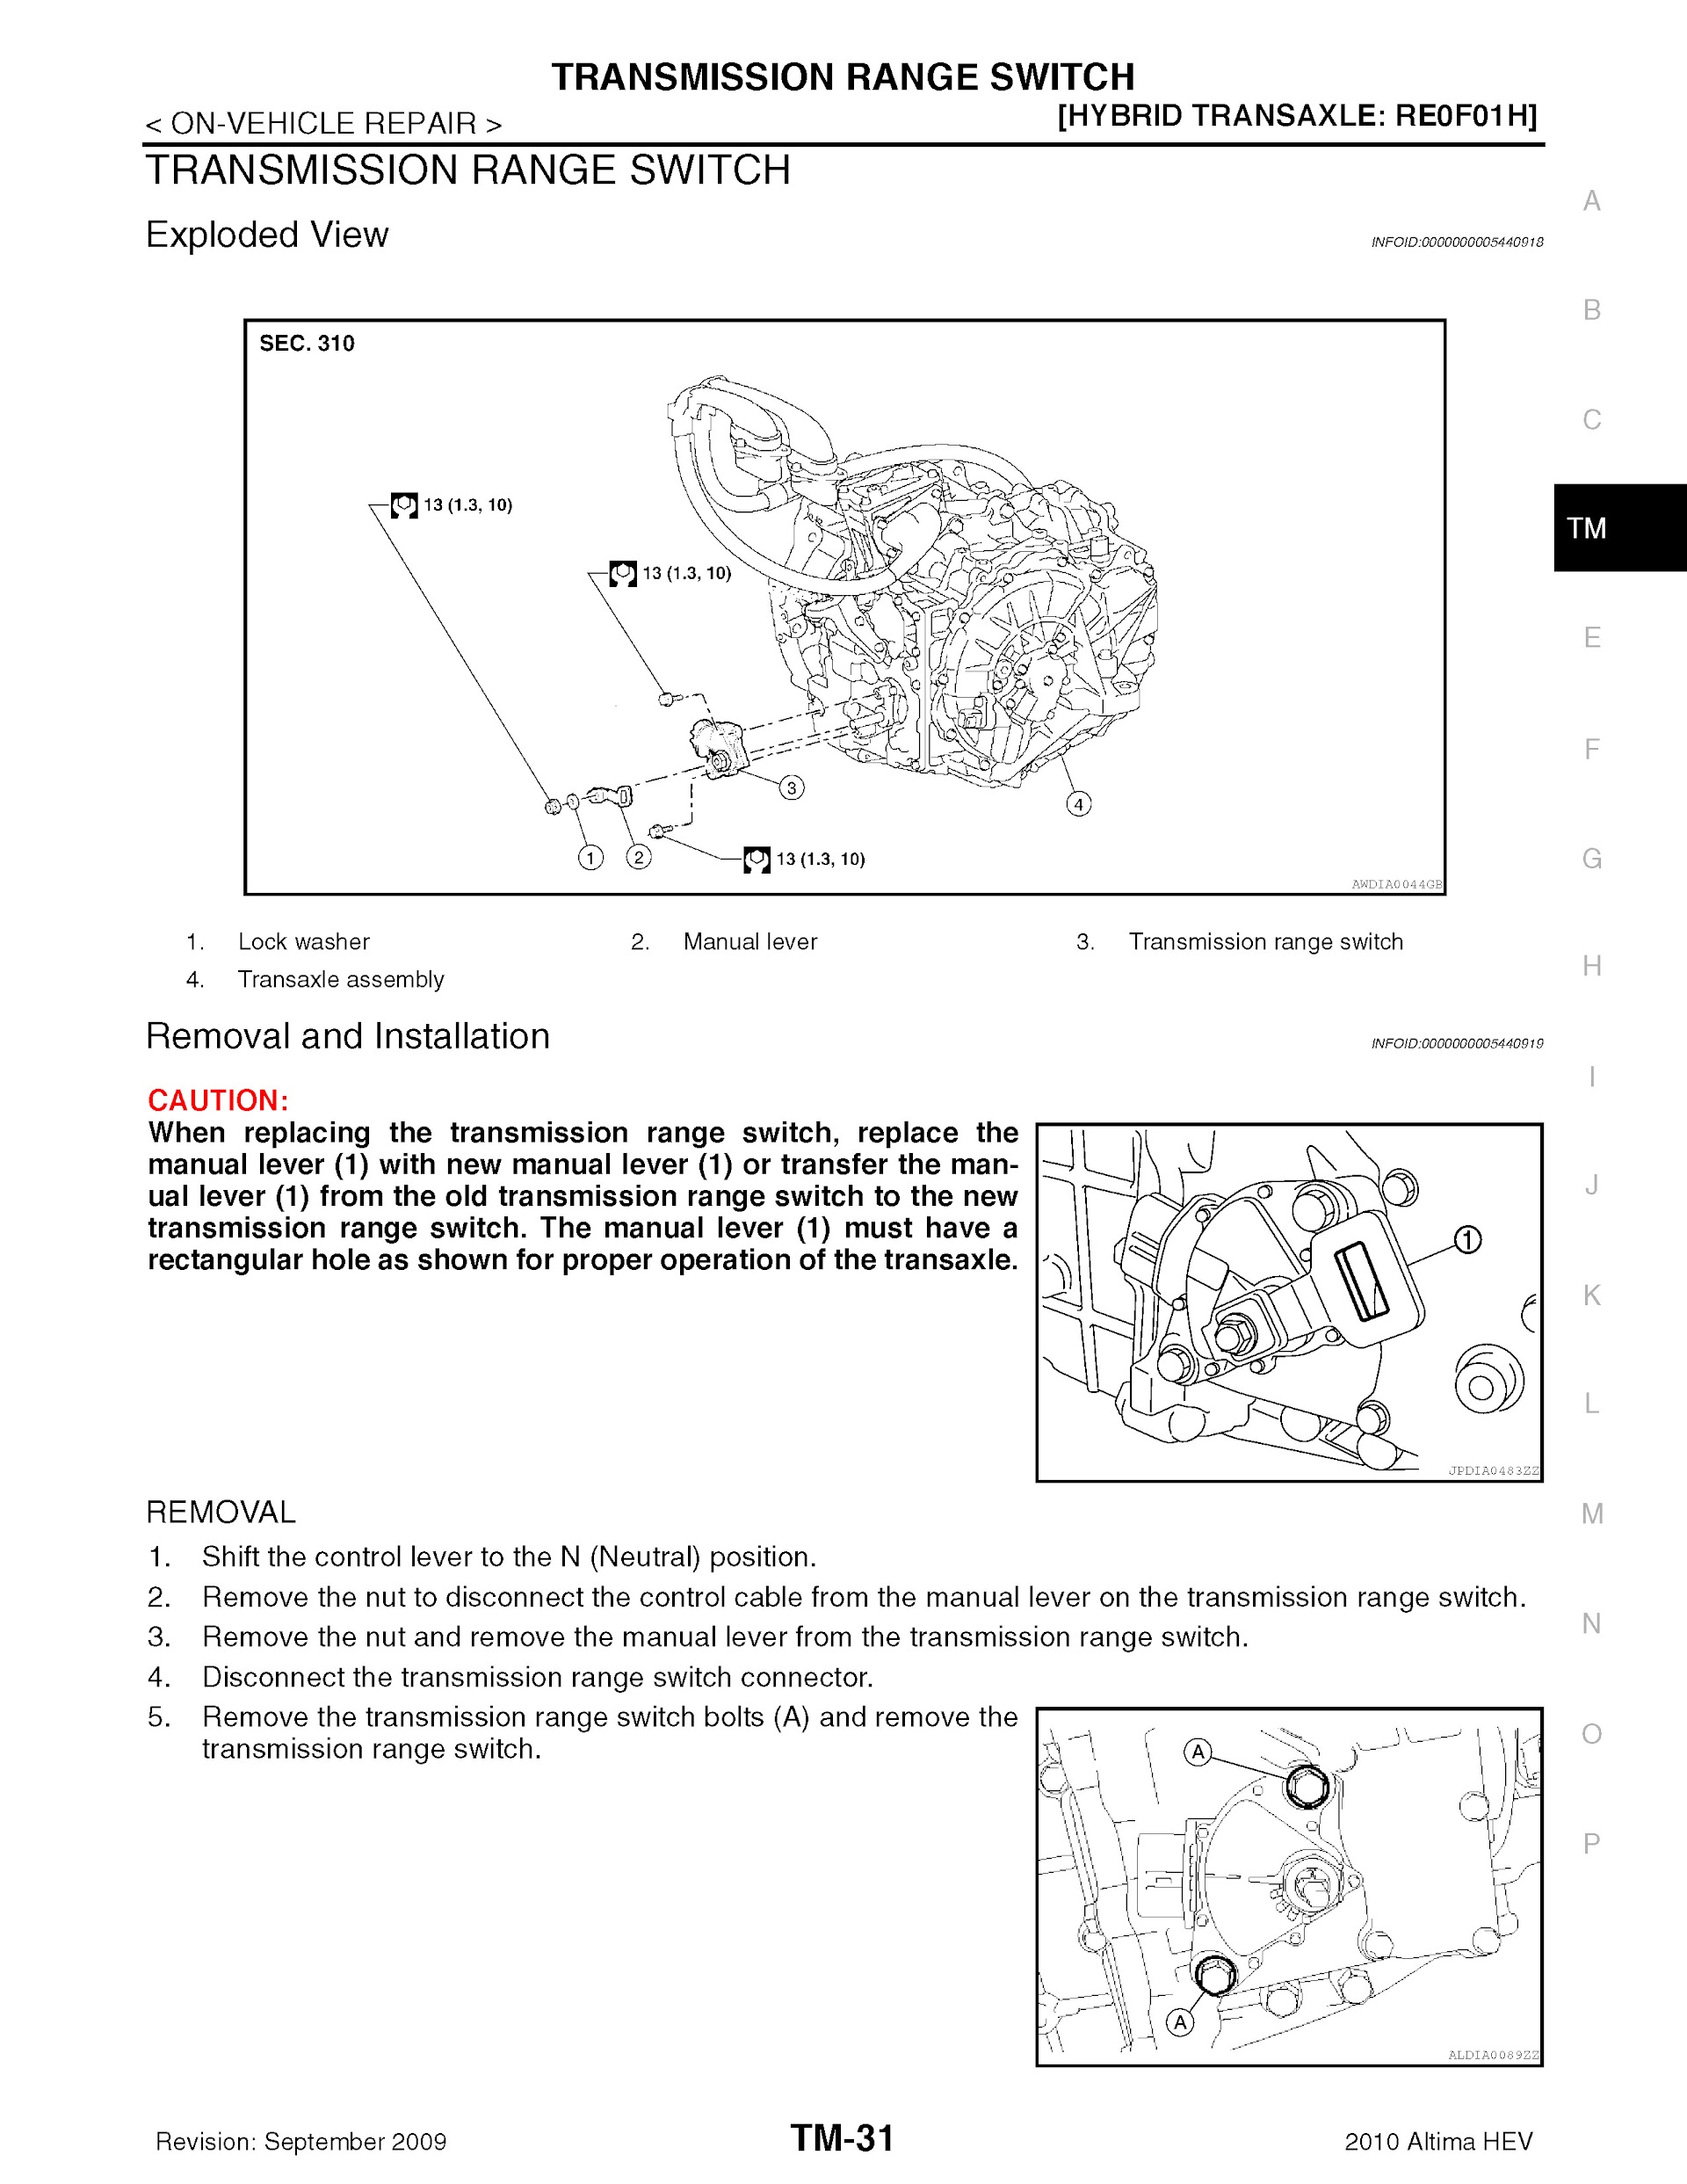 Download 2010 Nissan Altima Hybrid Repair Manual.